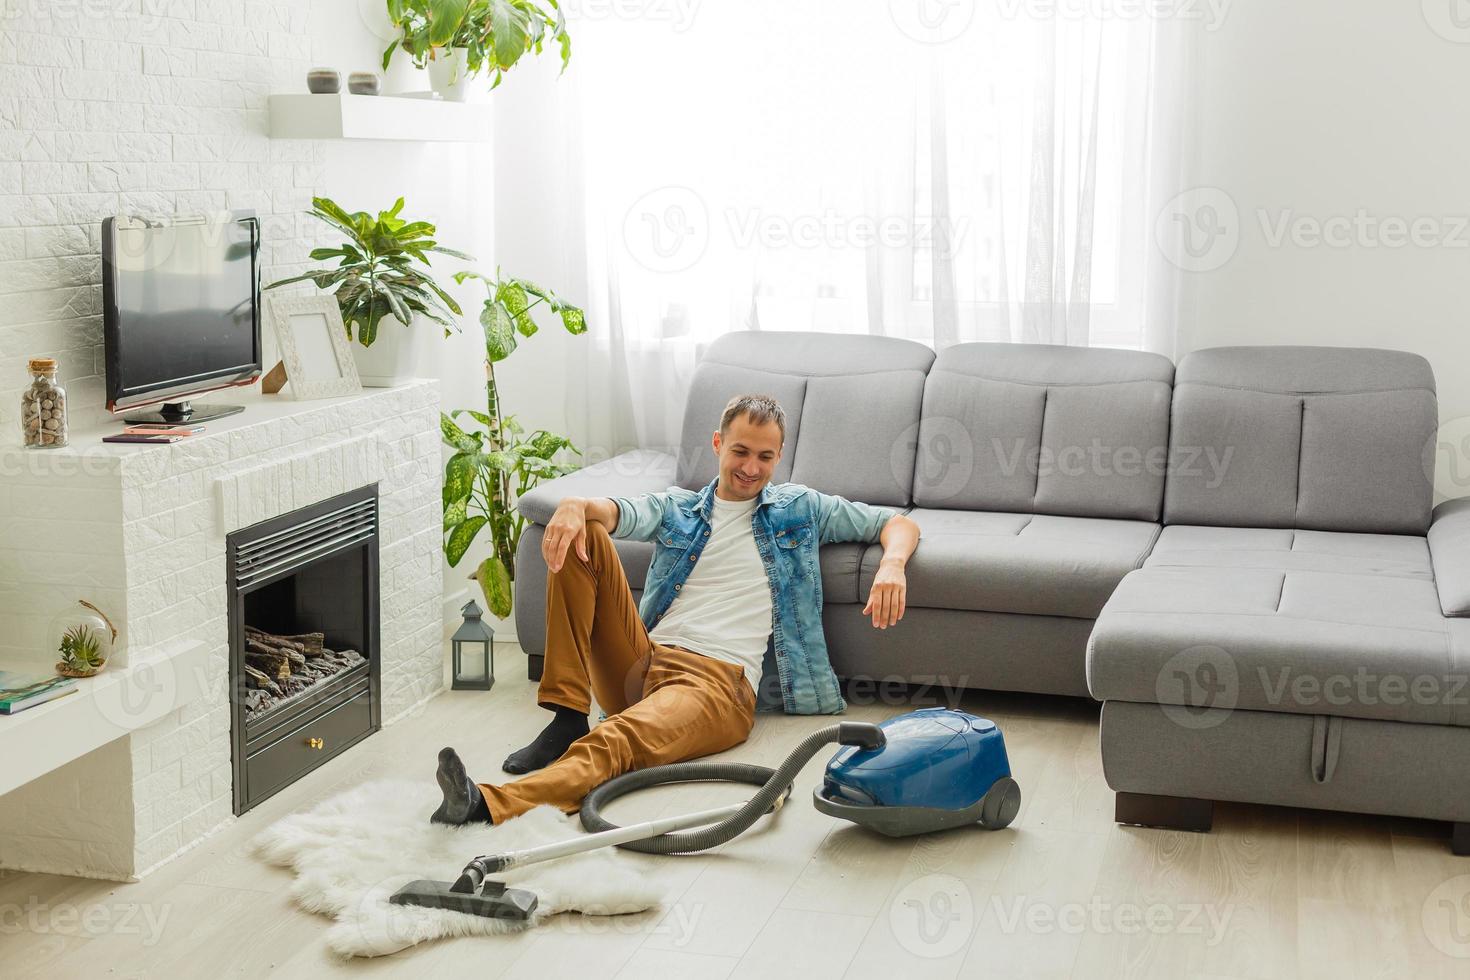 Un joven limpia el sofá con una aspiradora.